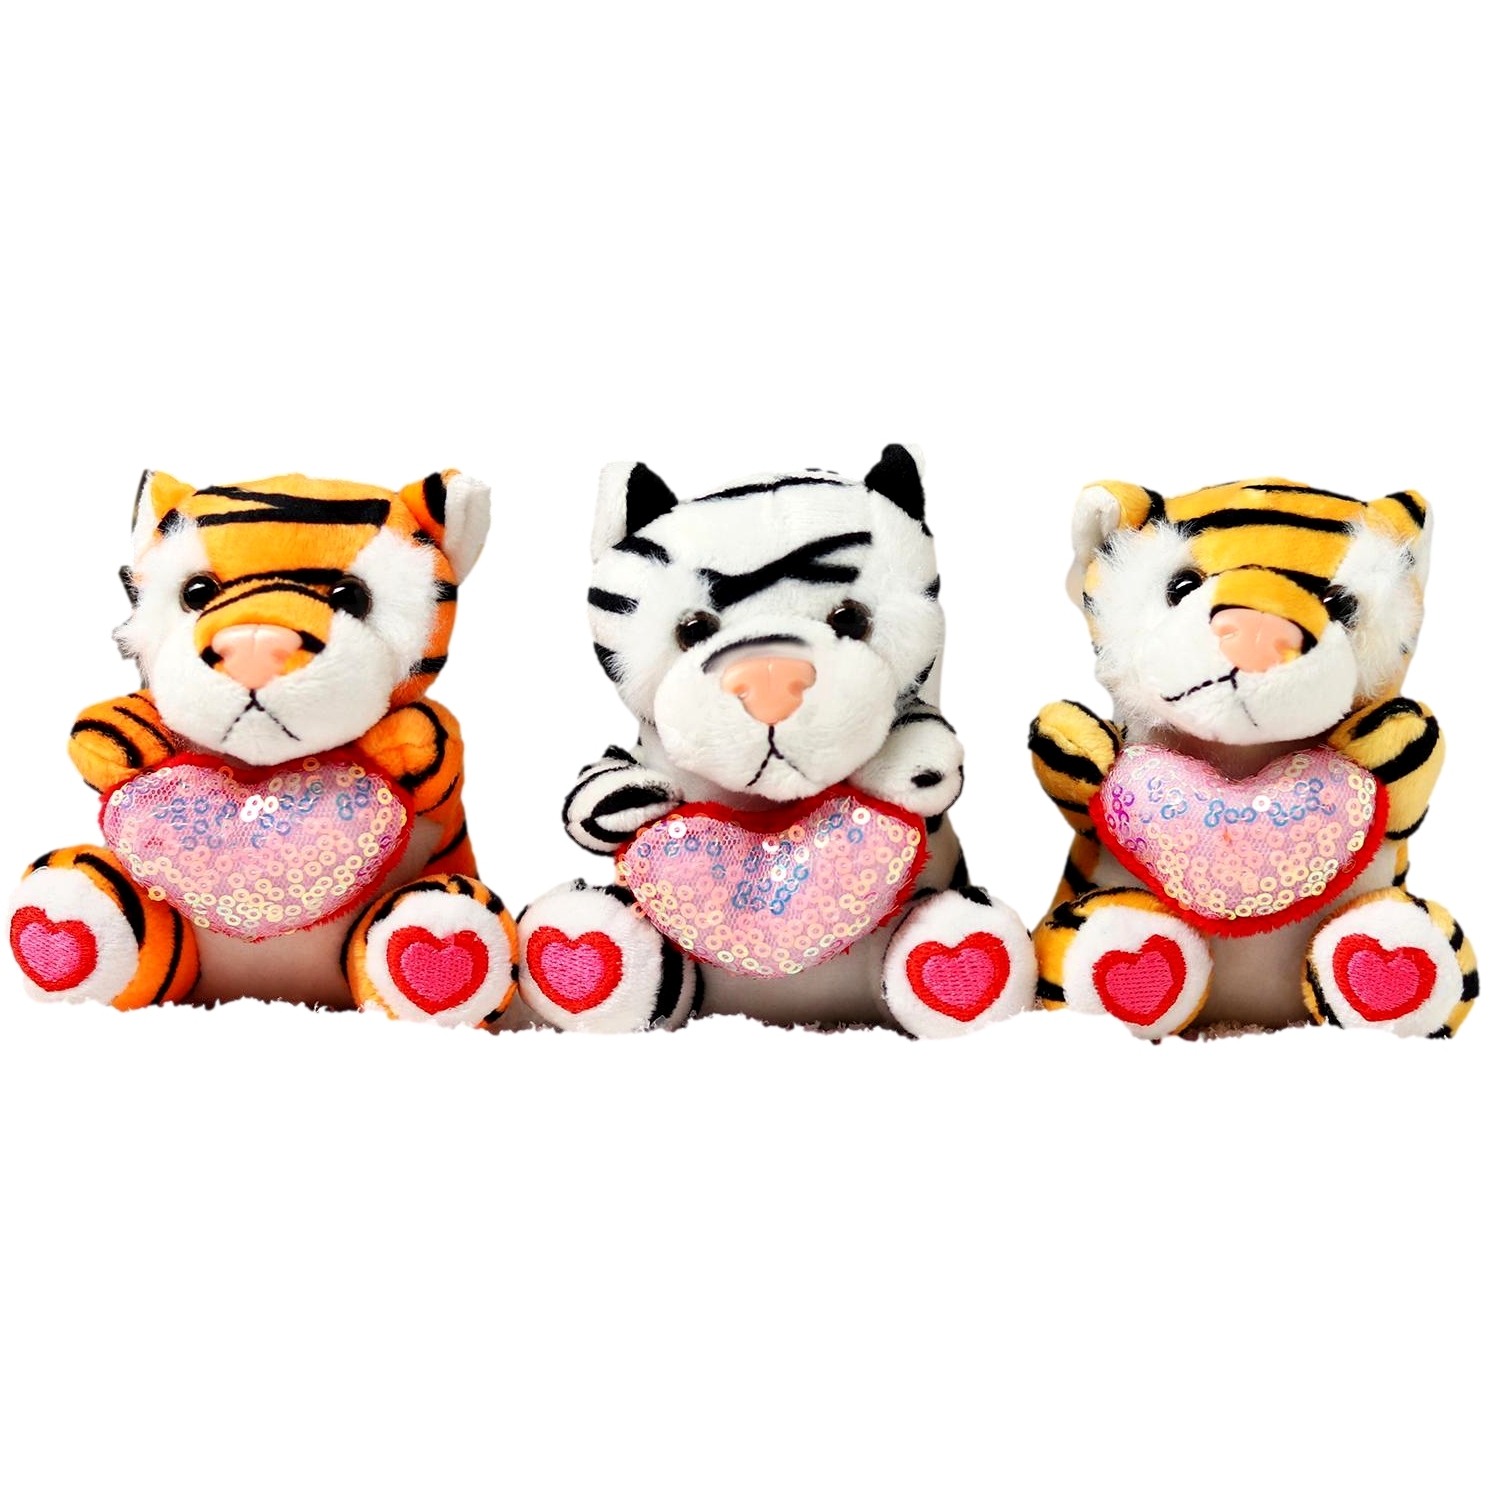 Мягкая игрушка "Влюблённый тигруля" (12 см)